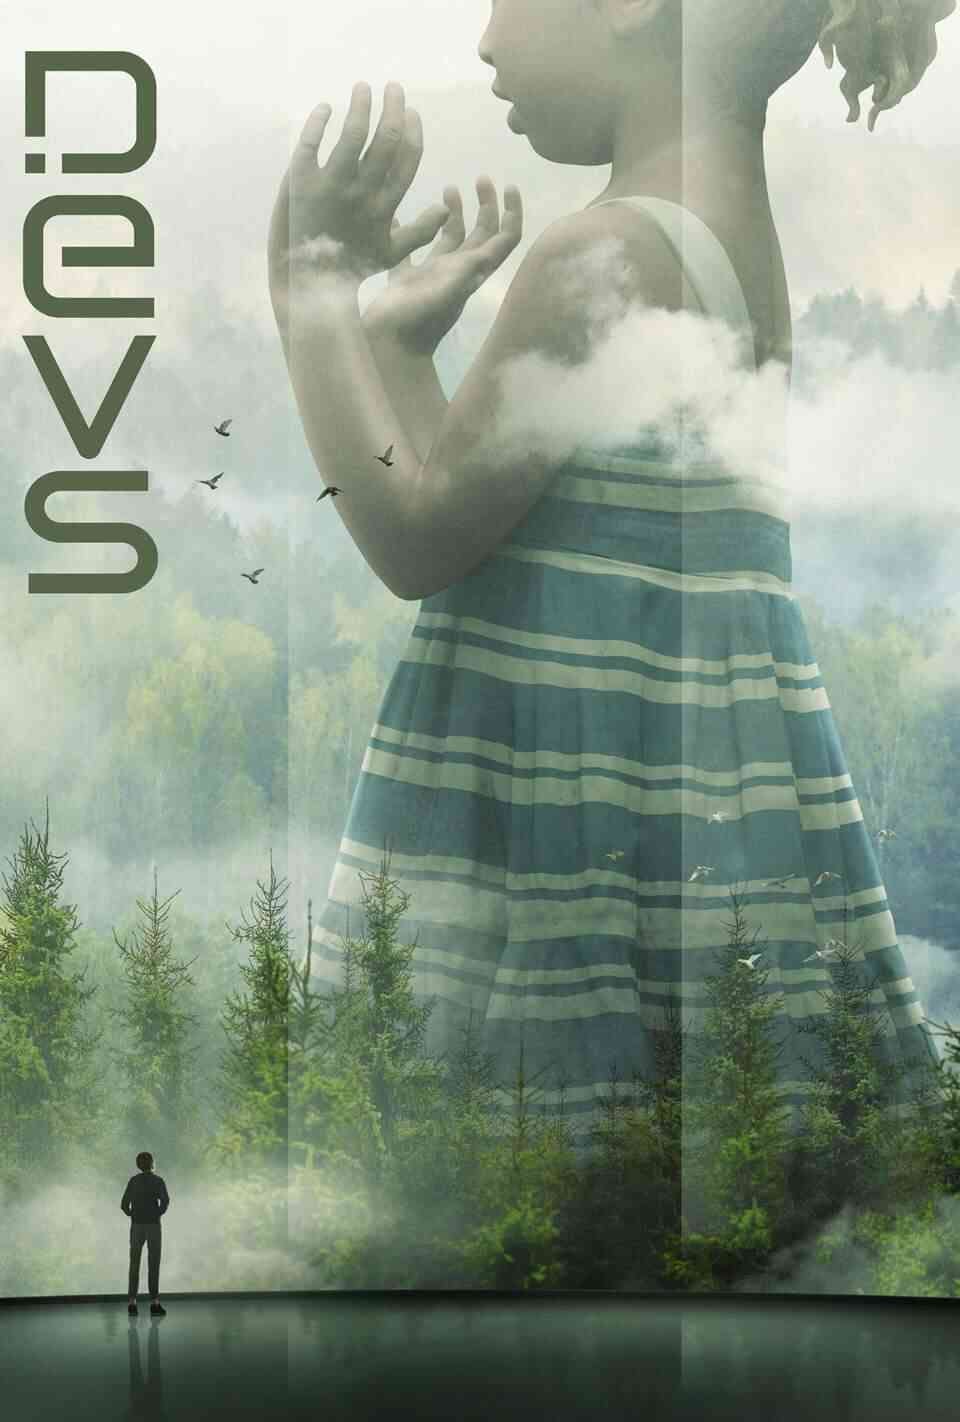 Read Devs screenplay (poster)